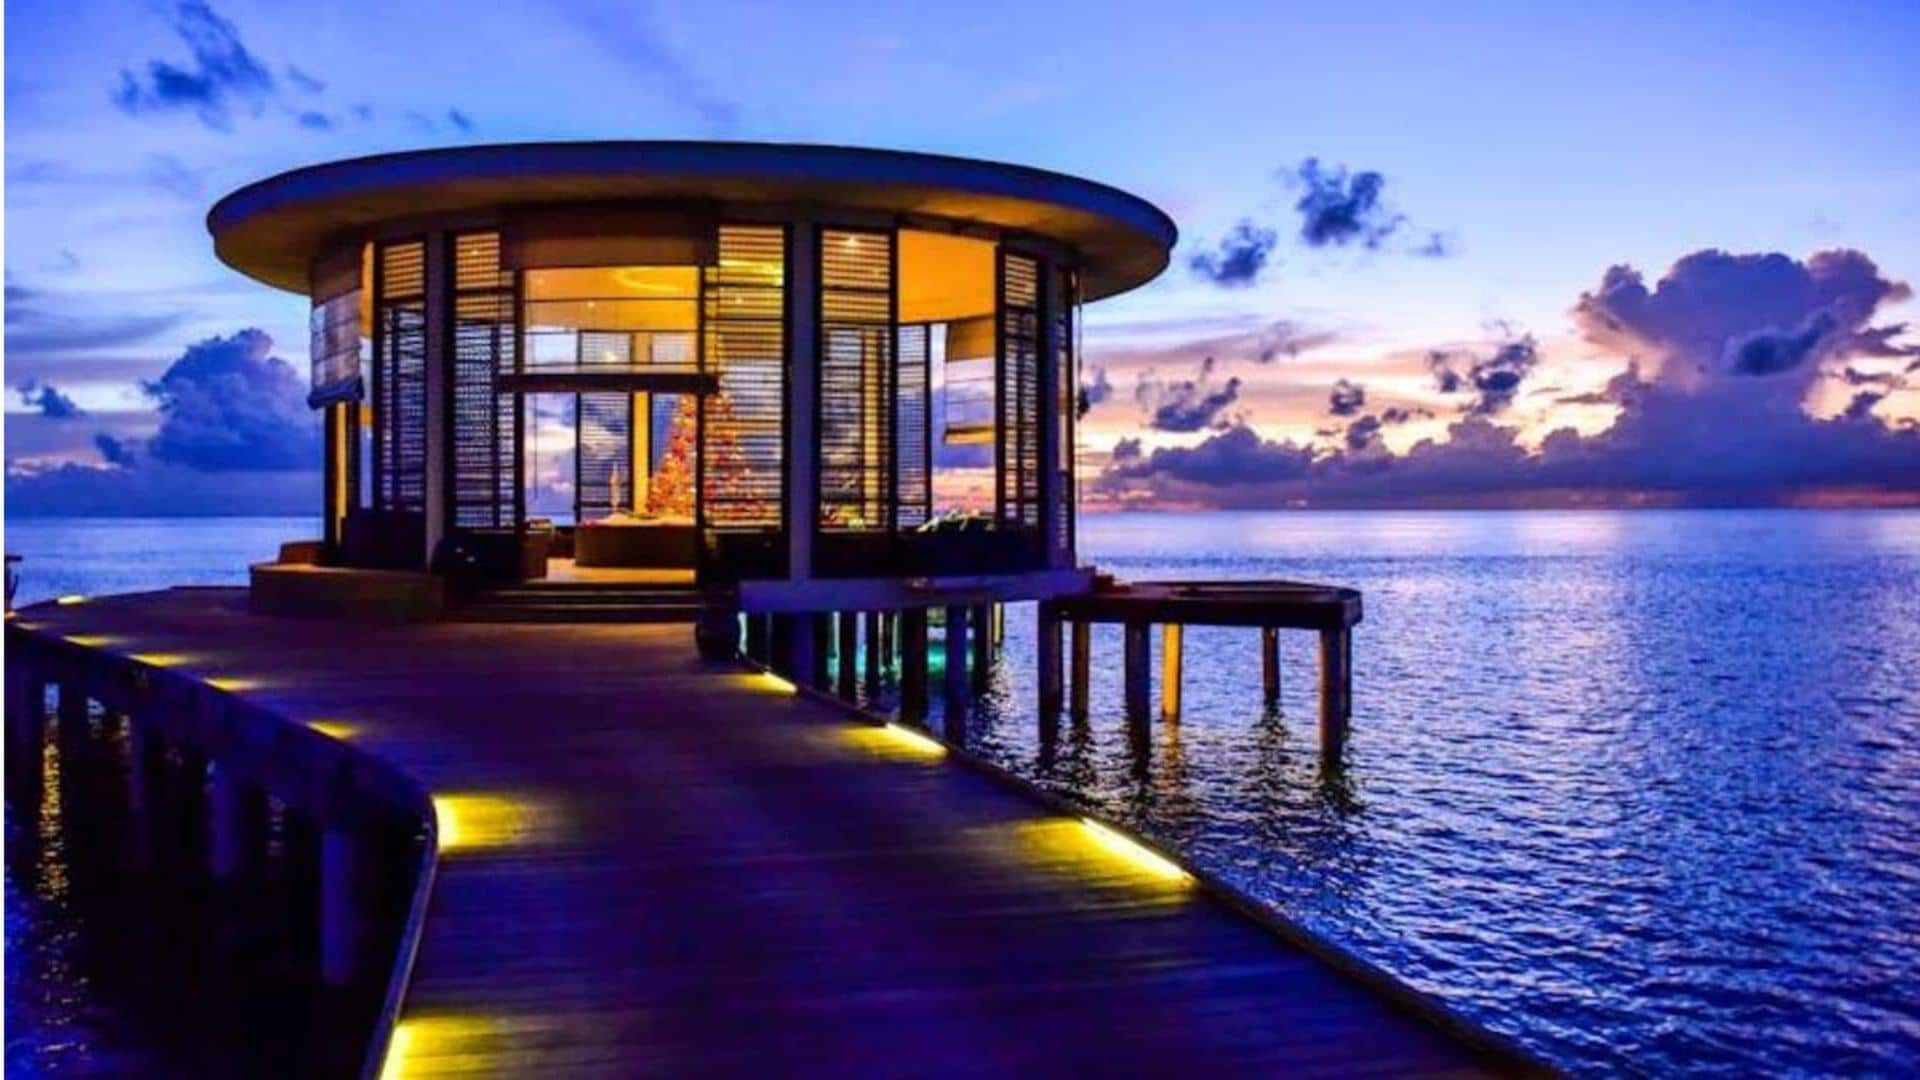 Bungalow di atas air, resor pulau pribadi untuk menginap di Maladewa